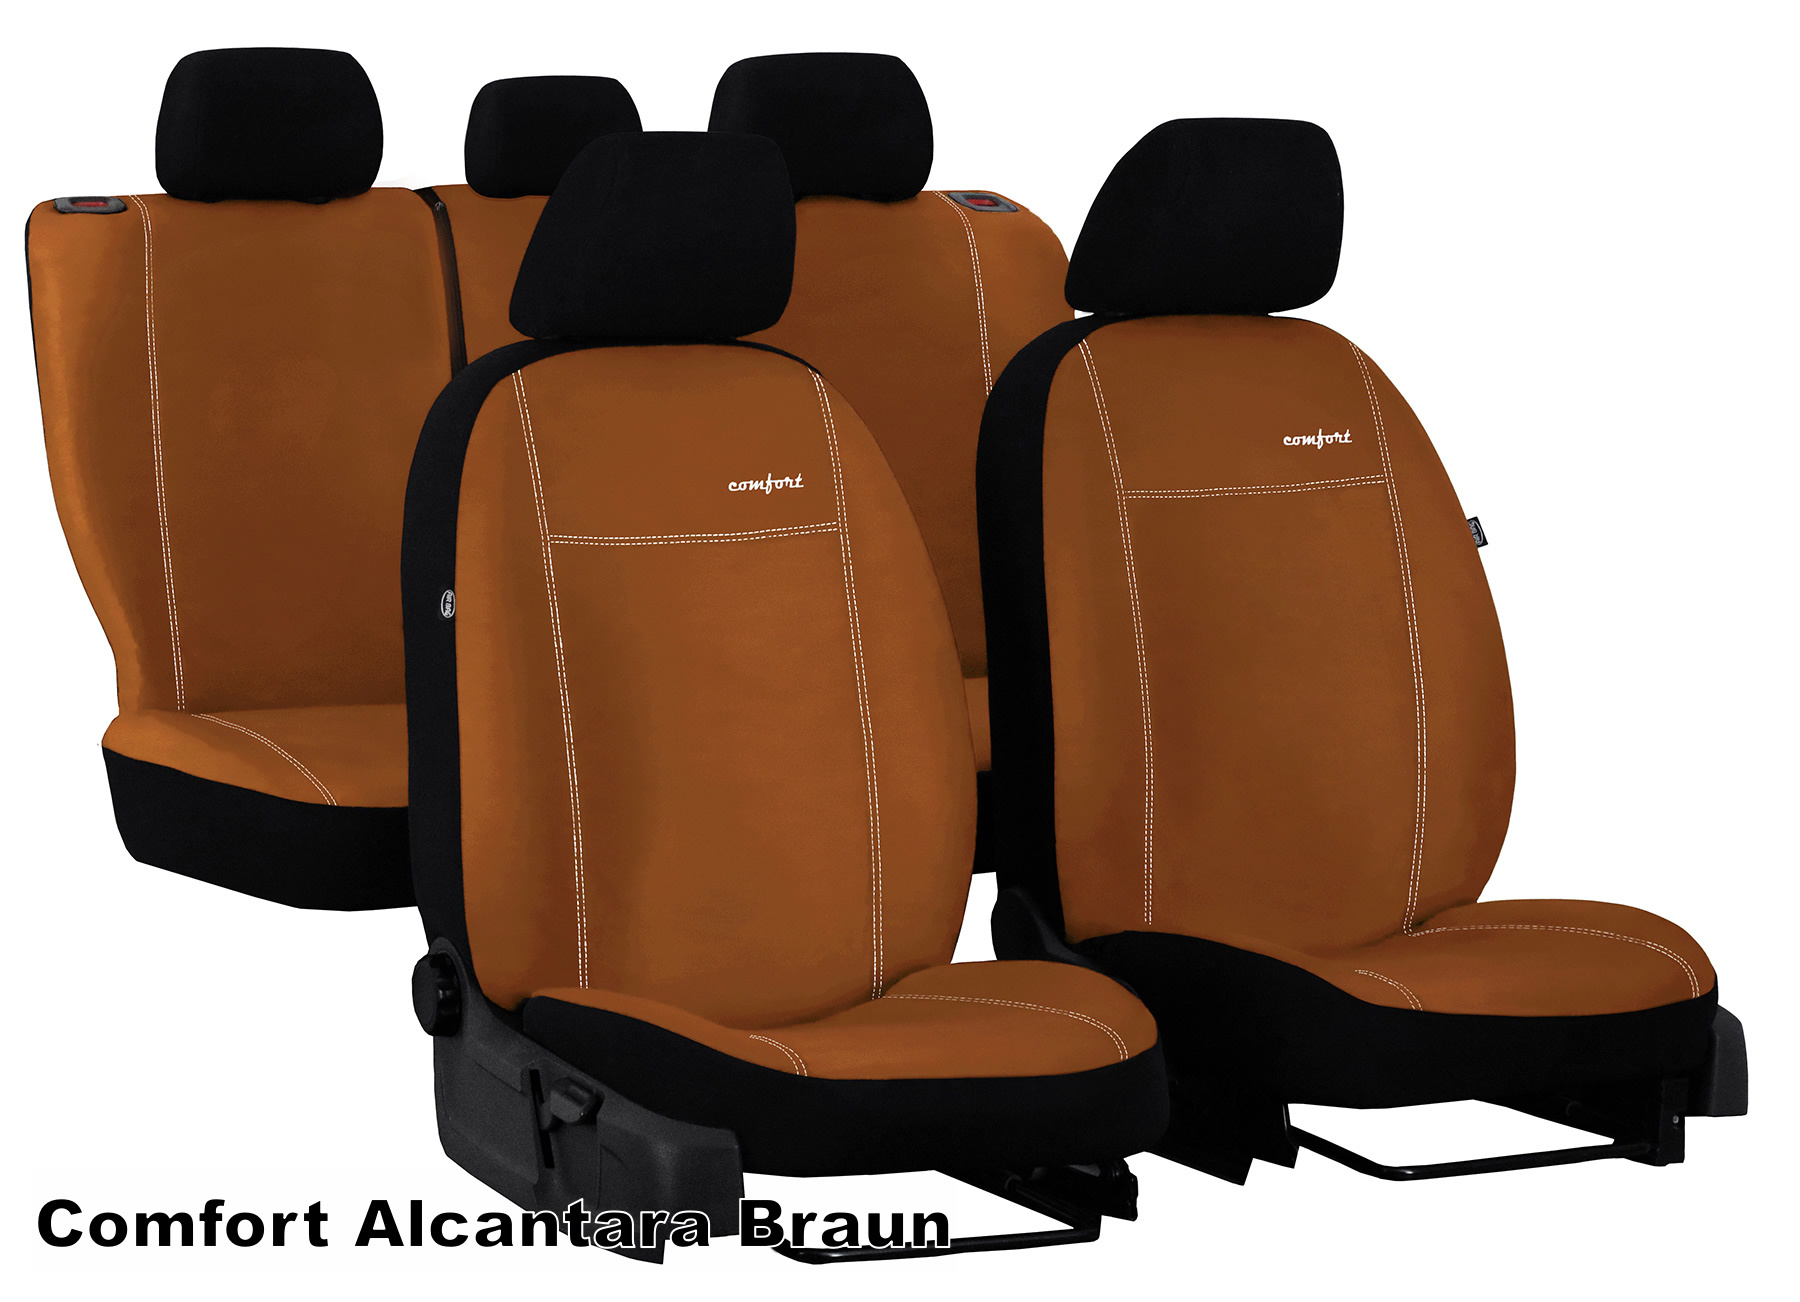 Maßgefertigter Stoff Sitzbezug Alfa Romeo 145, 156, 159 und Giulietta -  Maluch Premium Autozubehör